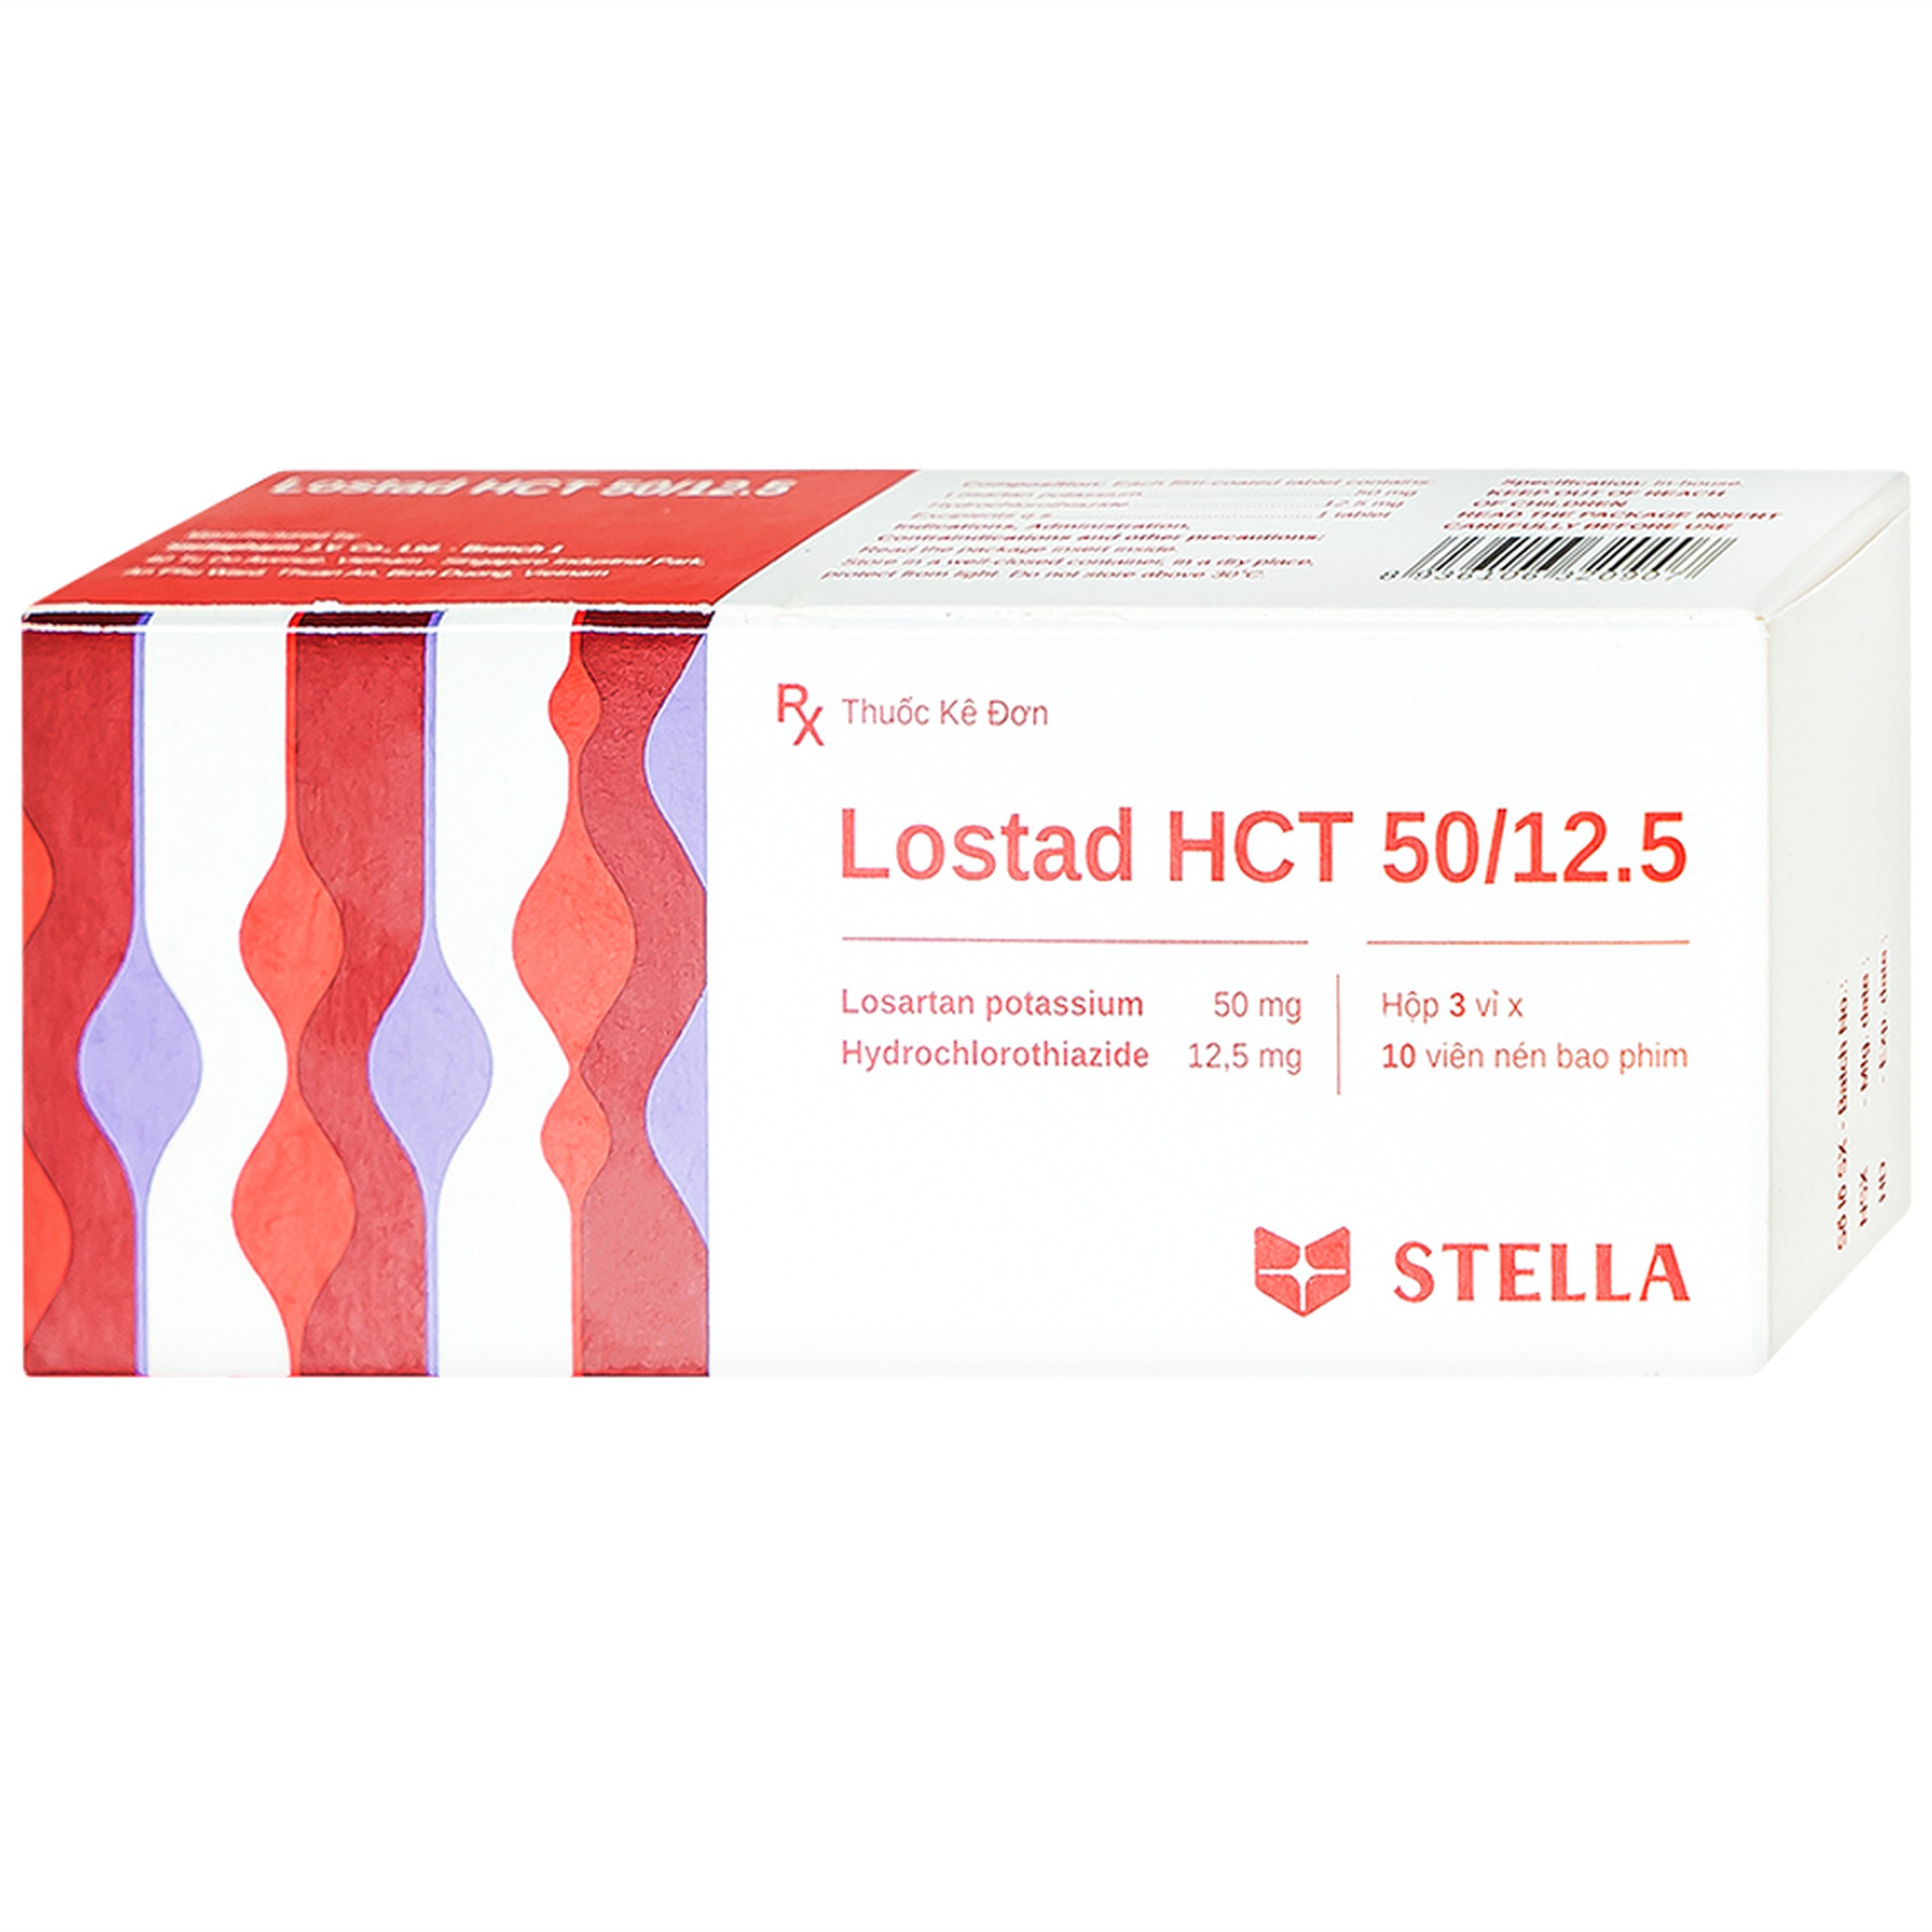 Thuốc Lostad HCT 50/12.5 Stella điều trị tăng huyết áp, giảm nguy cơ đột quỵ (3 vỉ x 10 viên) 